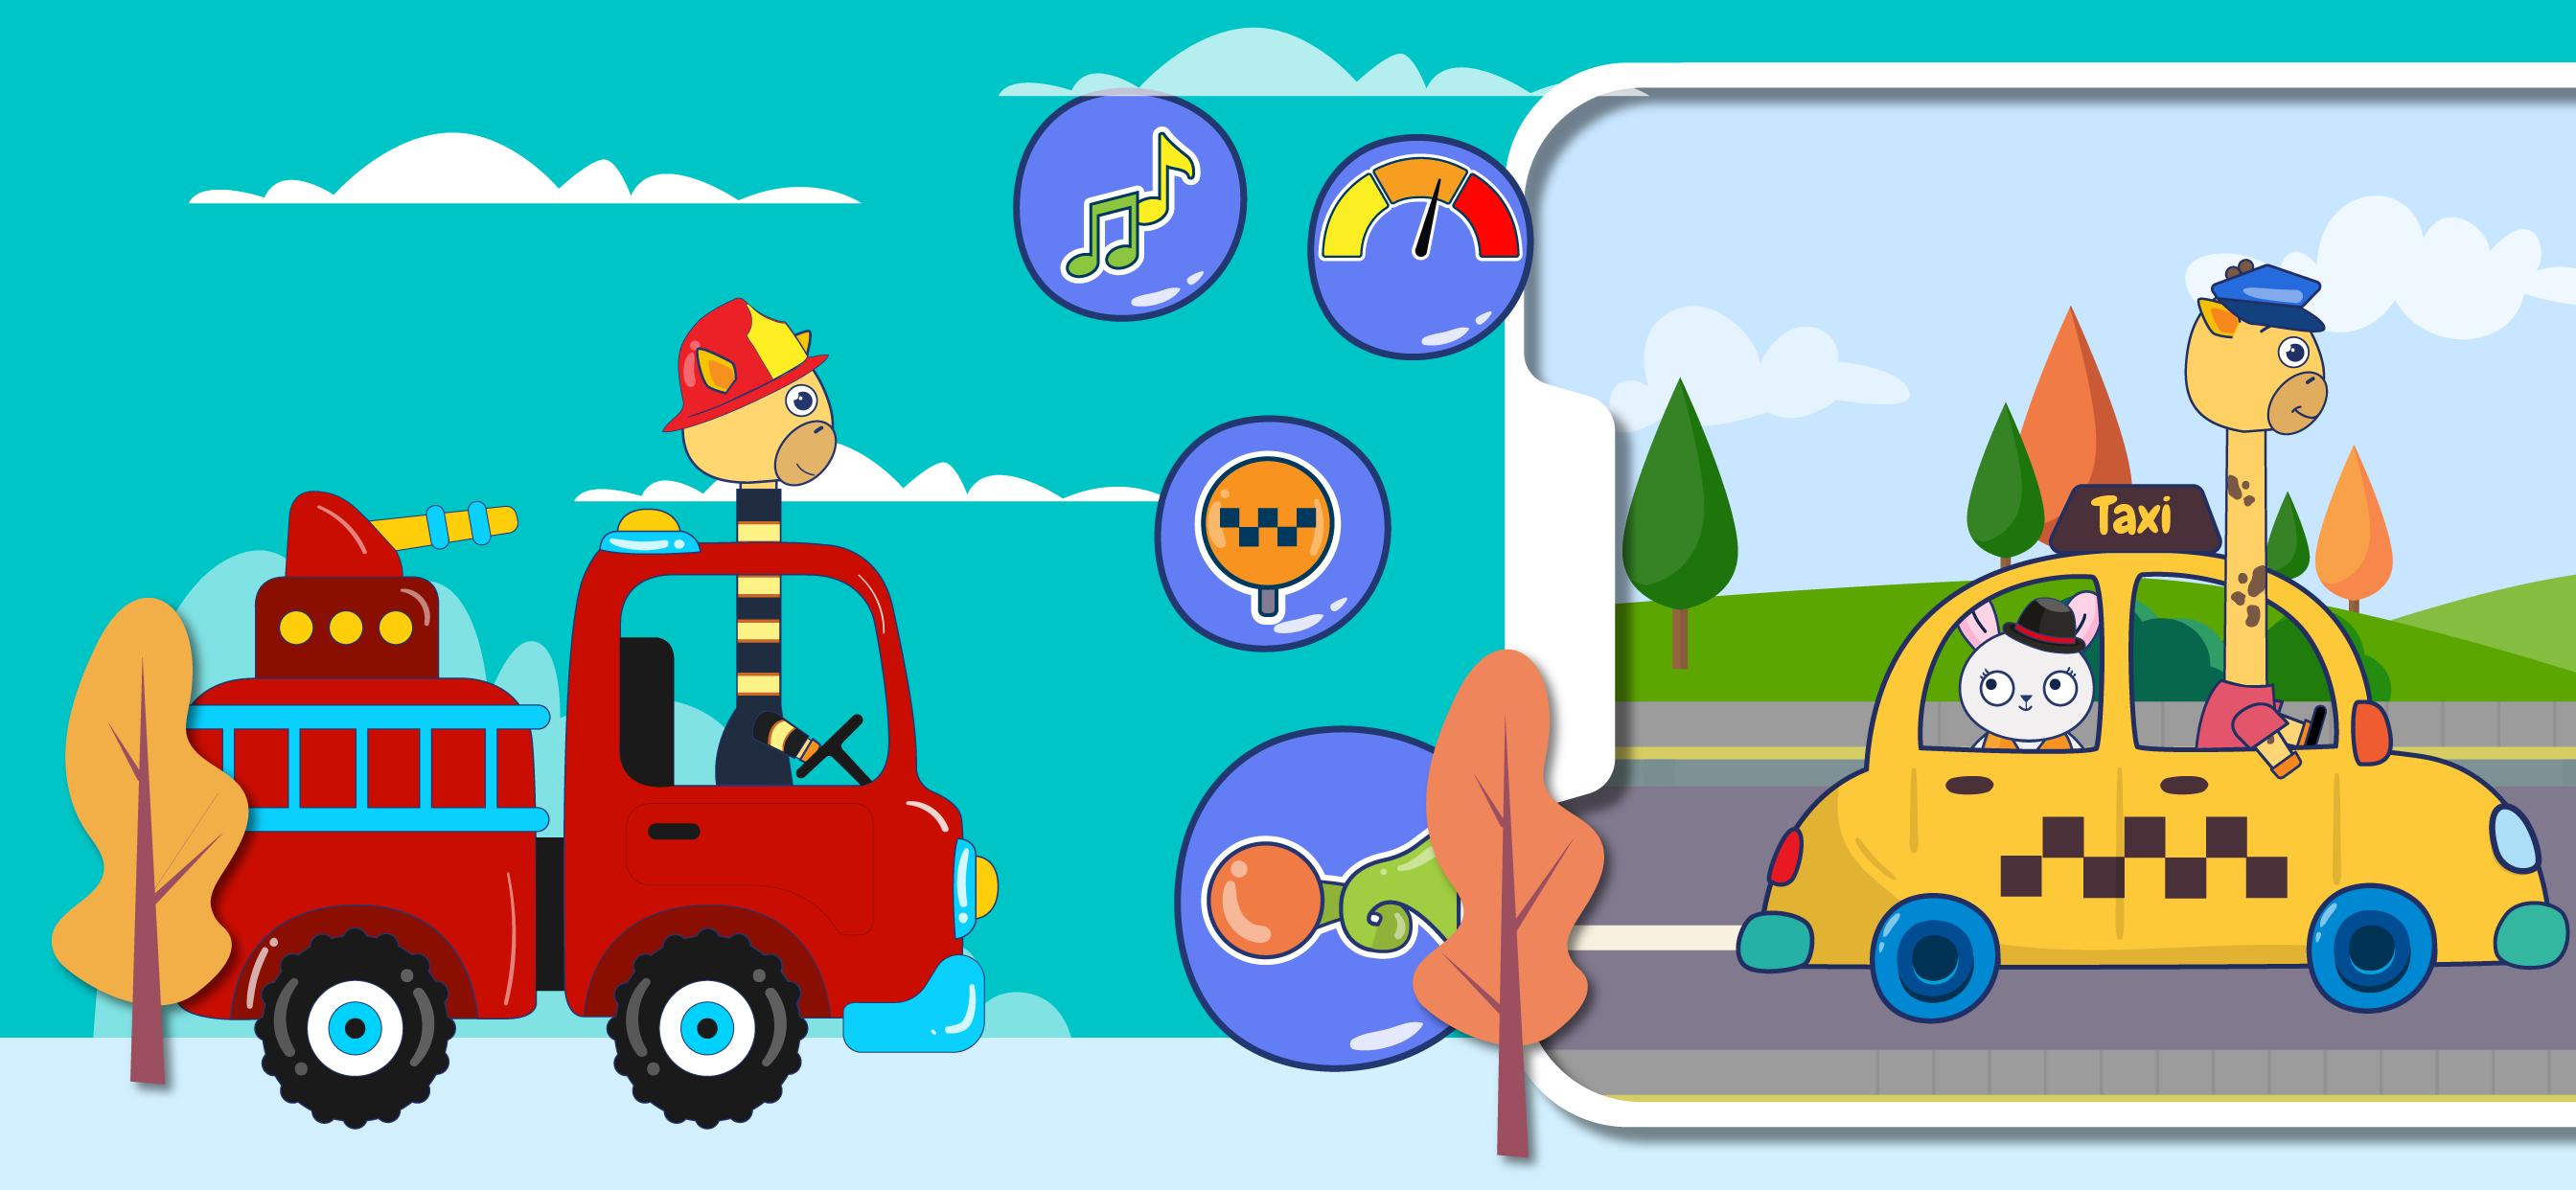 Juegos de carros para niños for Android - APK Download